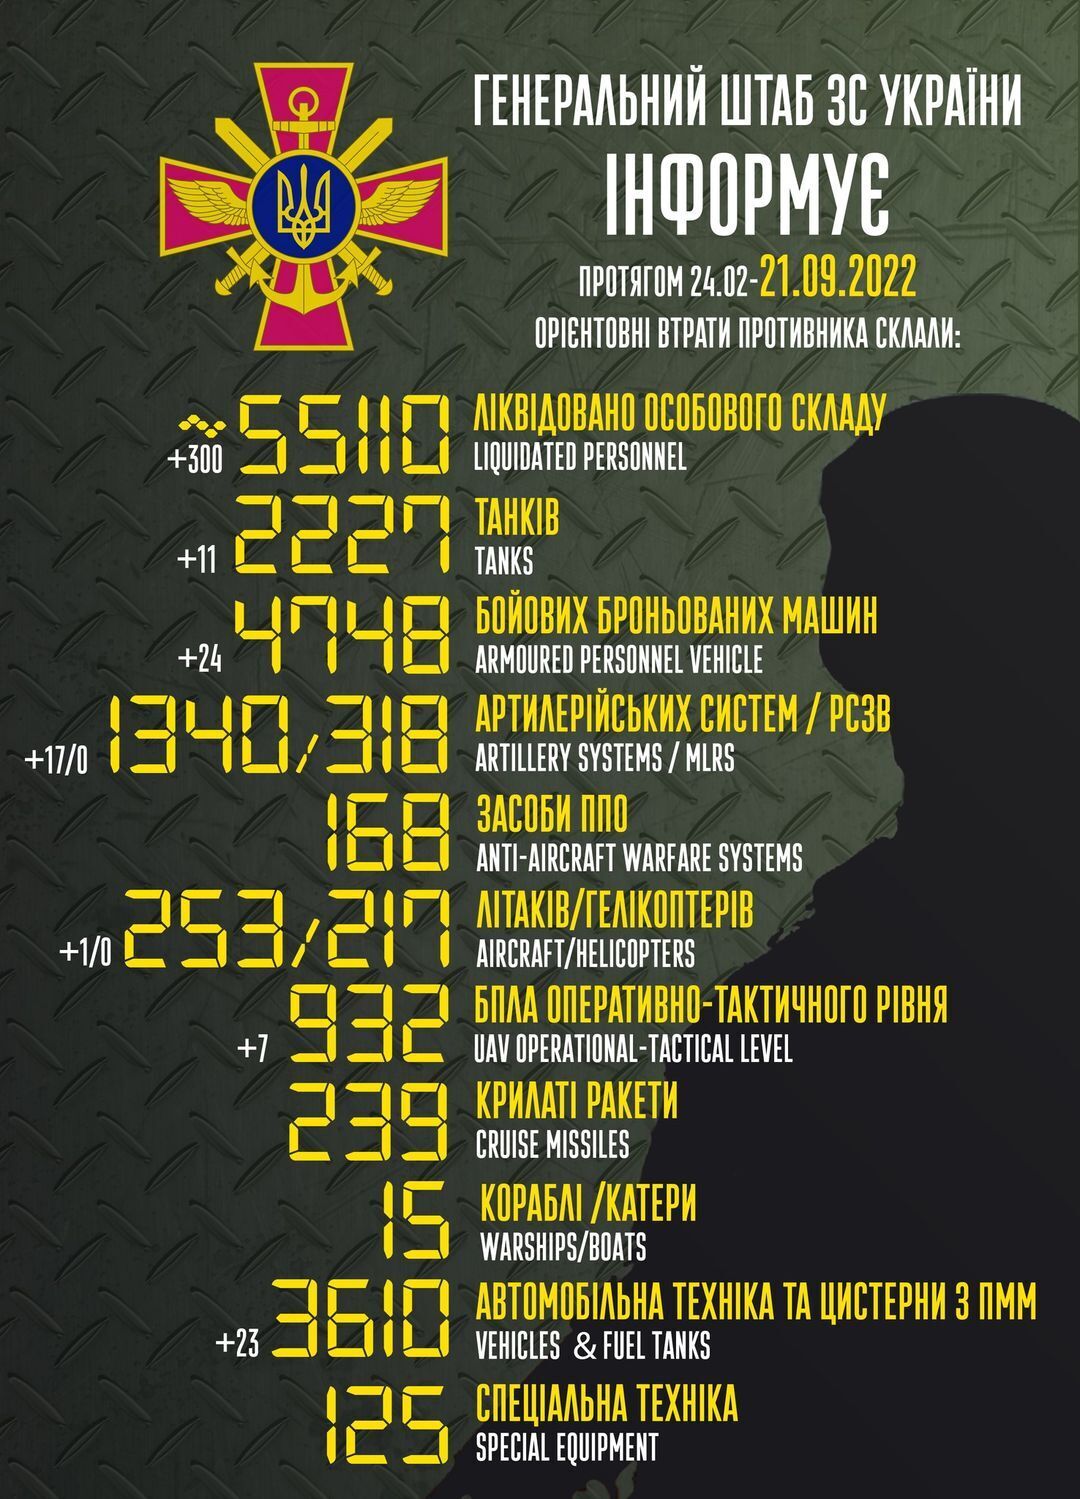 Втрати РФ у війні перевищили 55 тис. осіб, знищено 2227 танків: дані Генштабу